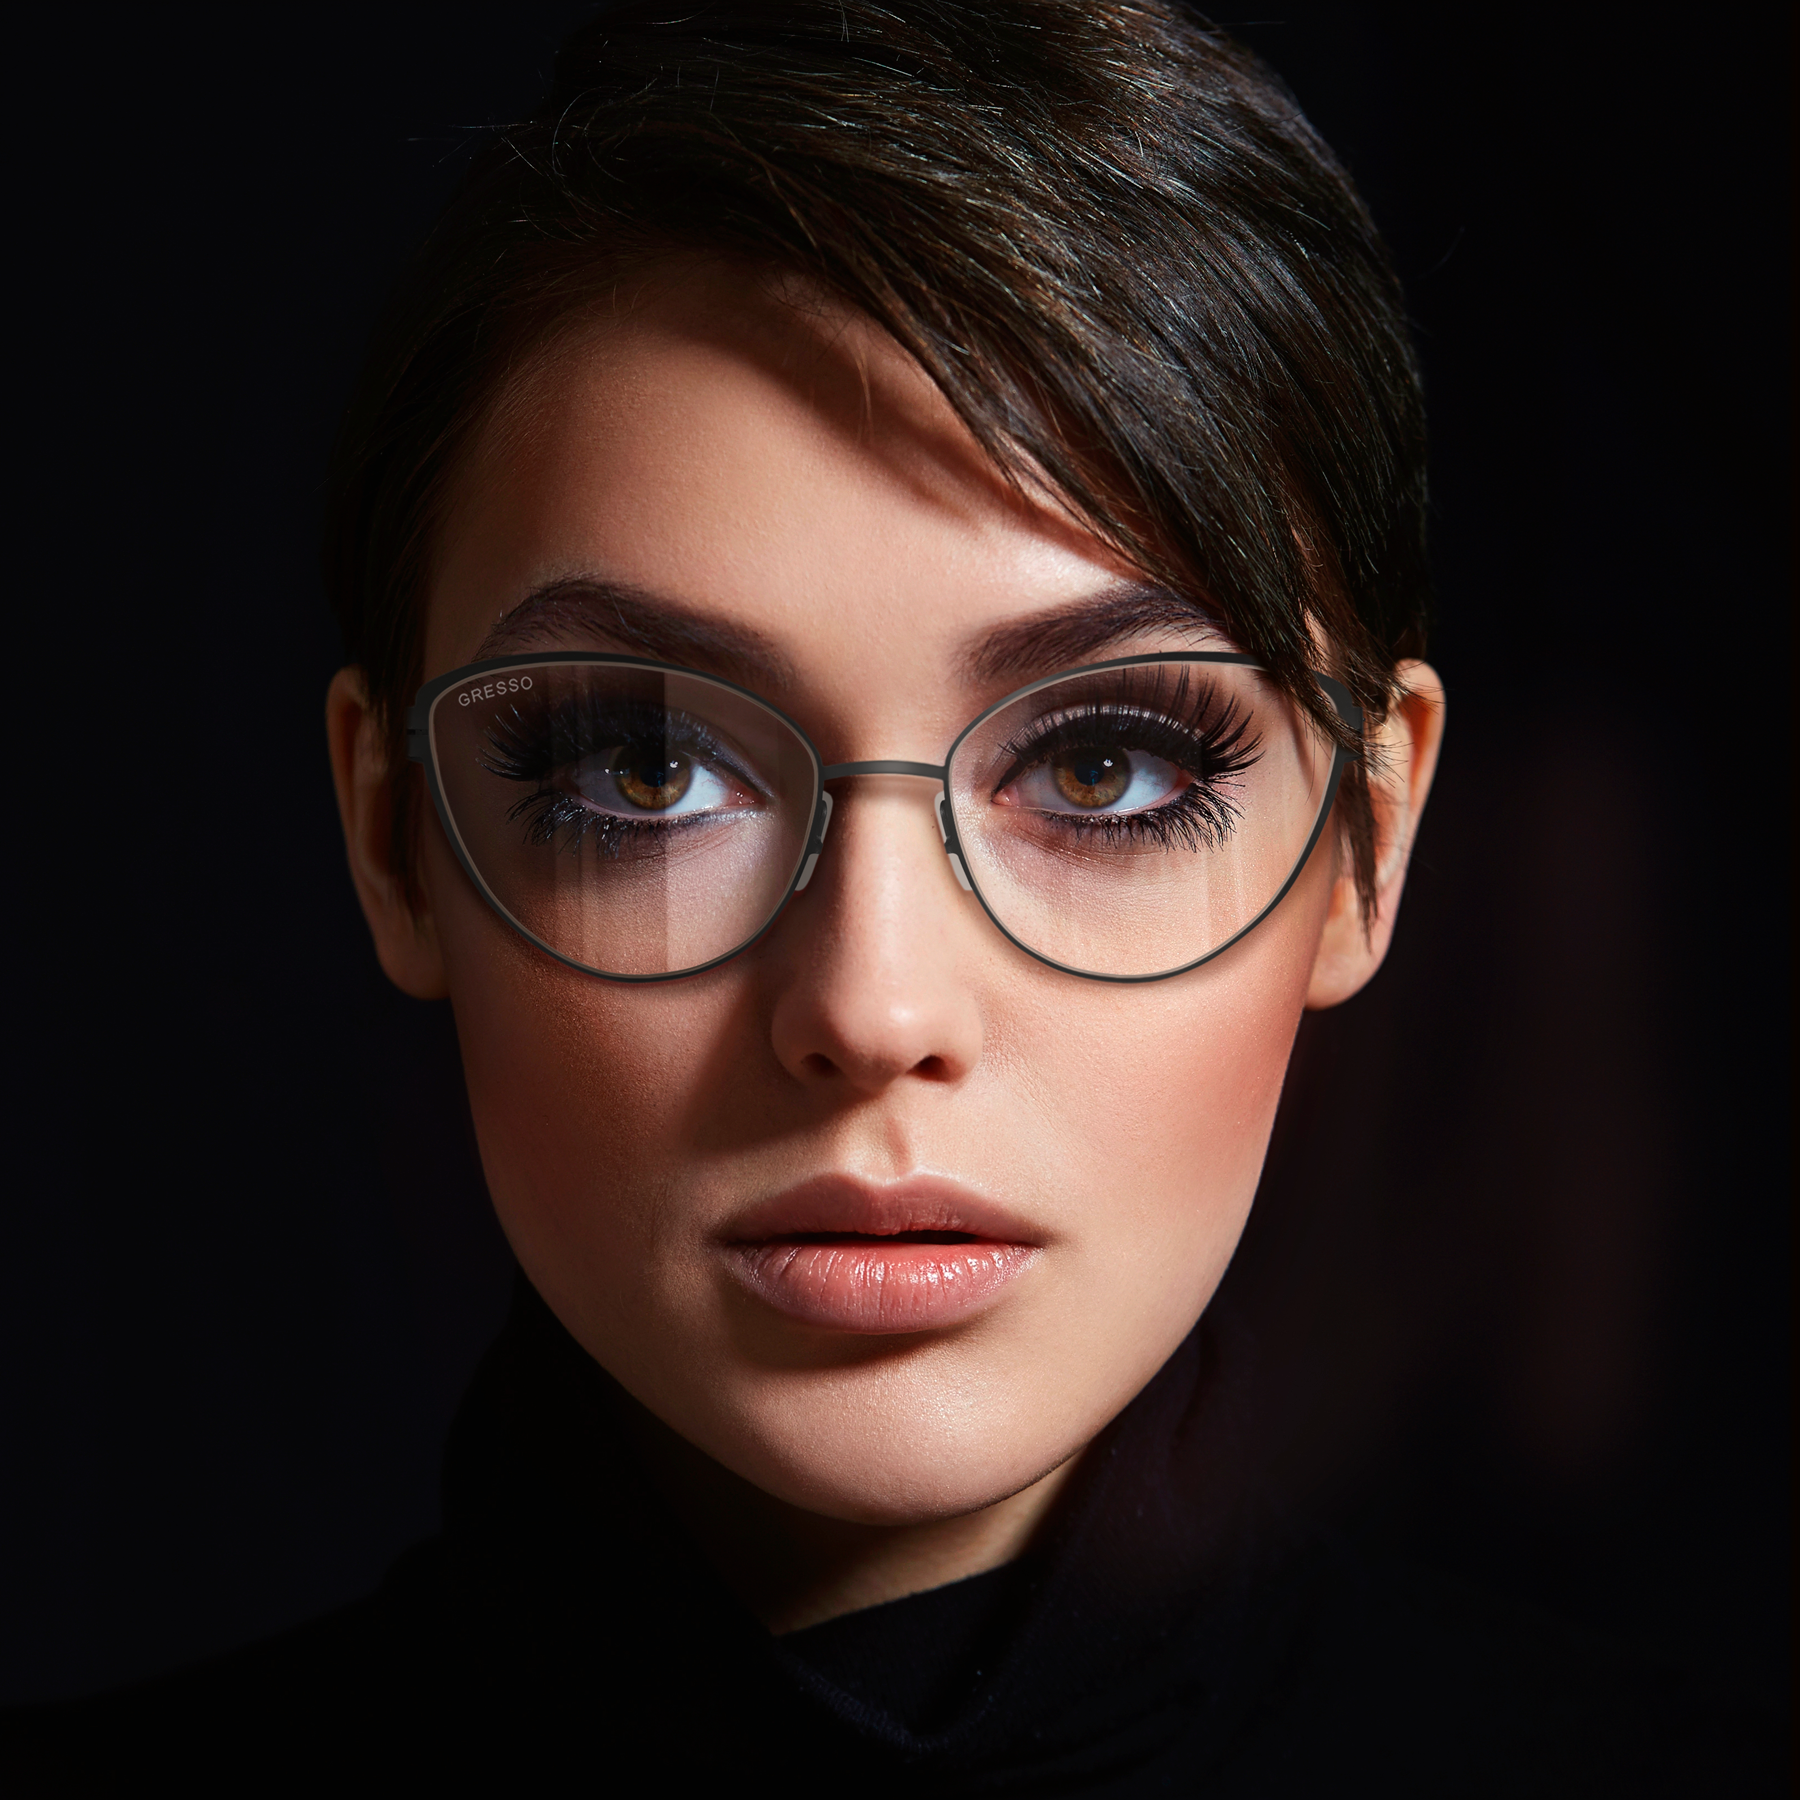 Купить онлайн или в салонах оптики в Москве и Санкт-Петербурге мужские титановые очки для зрения GRESSO Isabelle с диоптриями, изготовленные по вашему рецепту. Воспользуйтесь услугой бесплатной проверки зрения и консультацией опытного врача-офтальмолога.